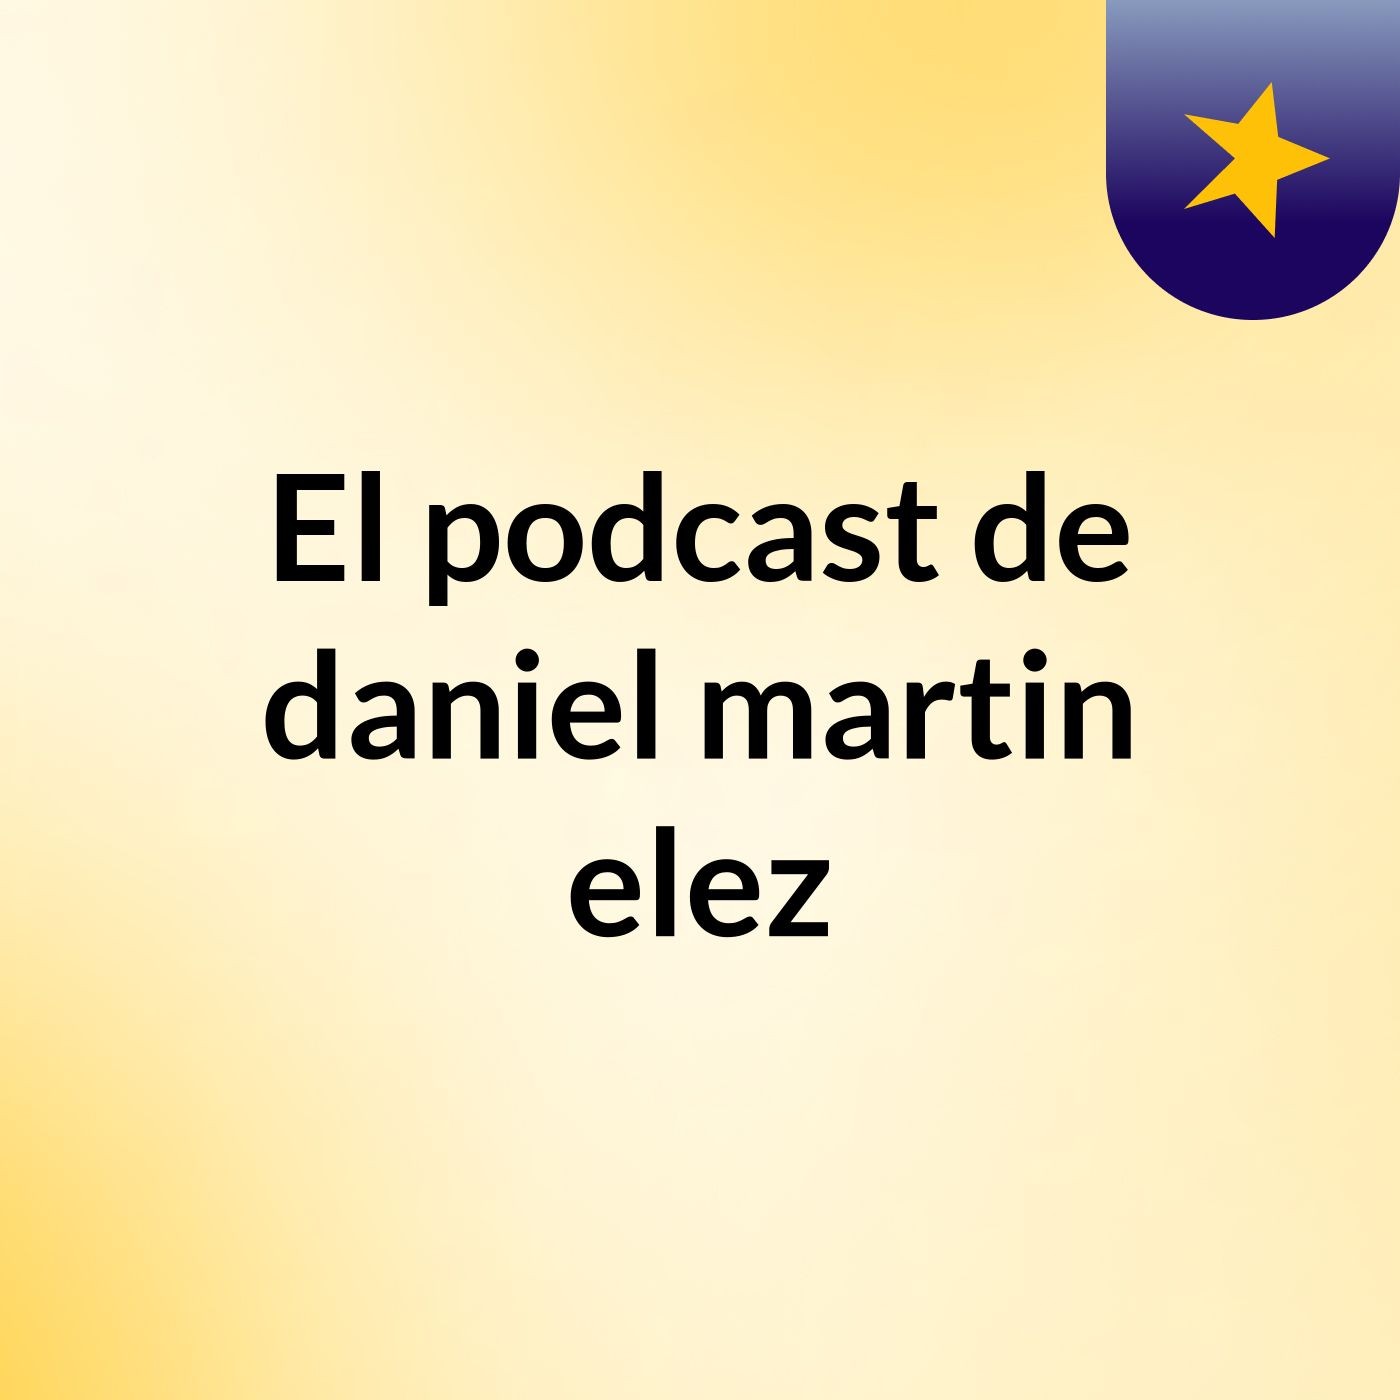 El podcast de daniel martin elez